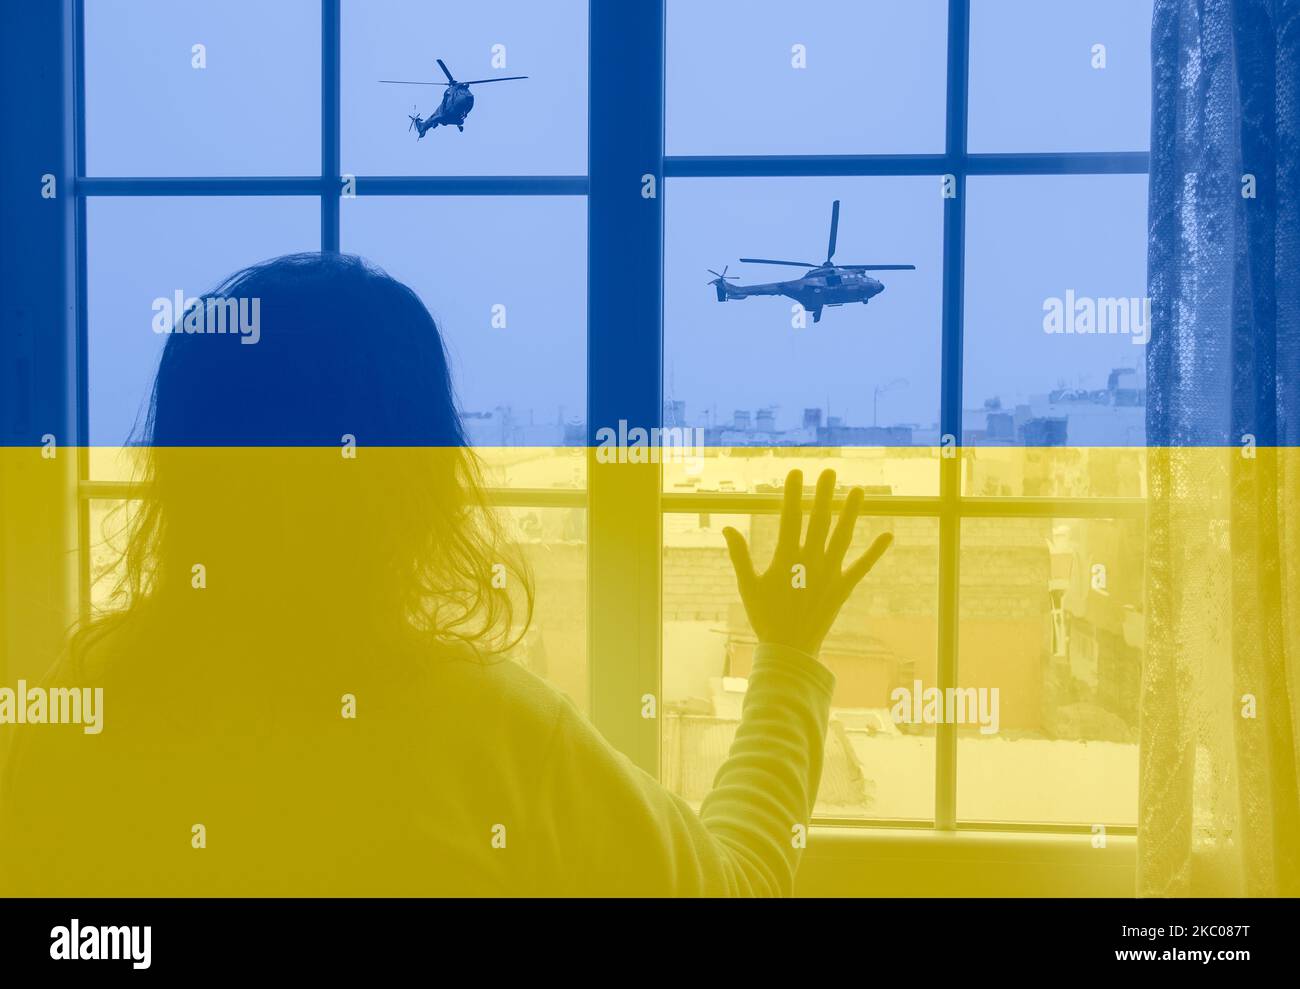 Donna alla finestra che guarda elicotteri militari con bandiera dell'Ucraina sovrastata. Russia, guerra, conflitto, rifugiati, obiettivo civile... concetto Foto Stock